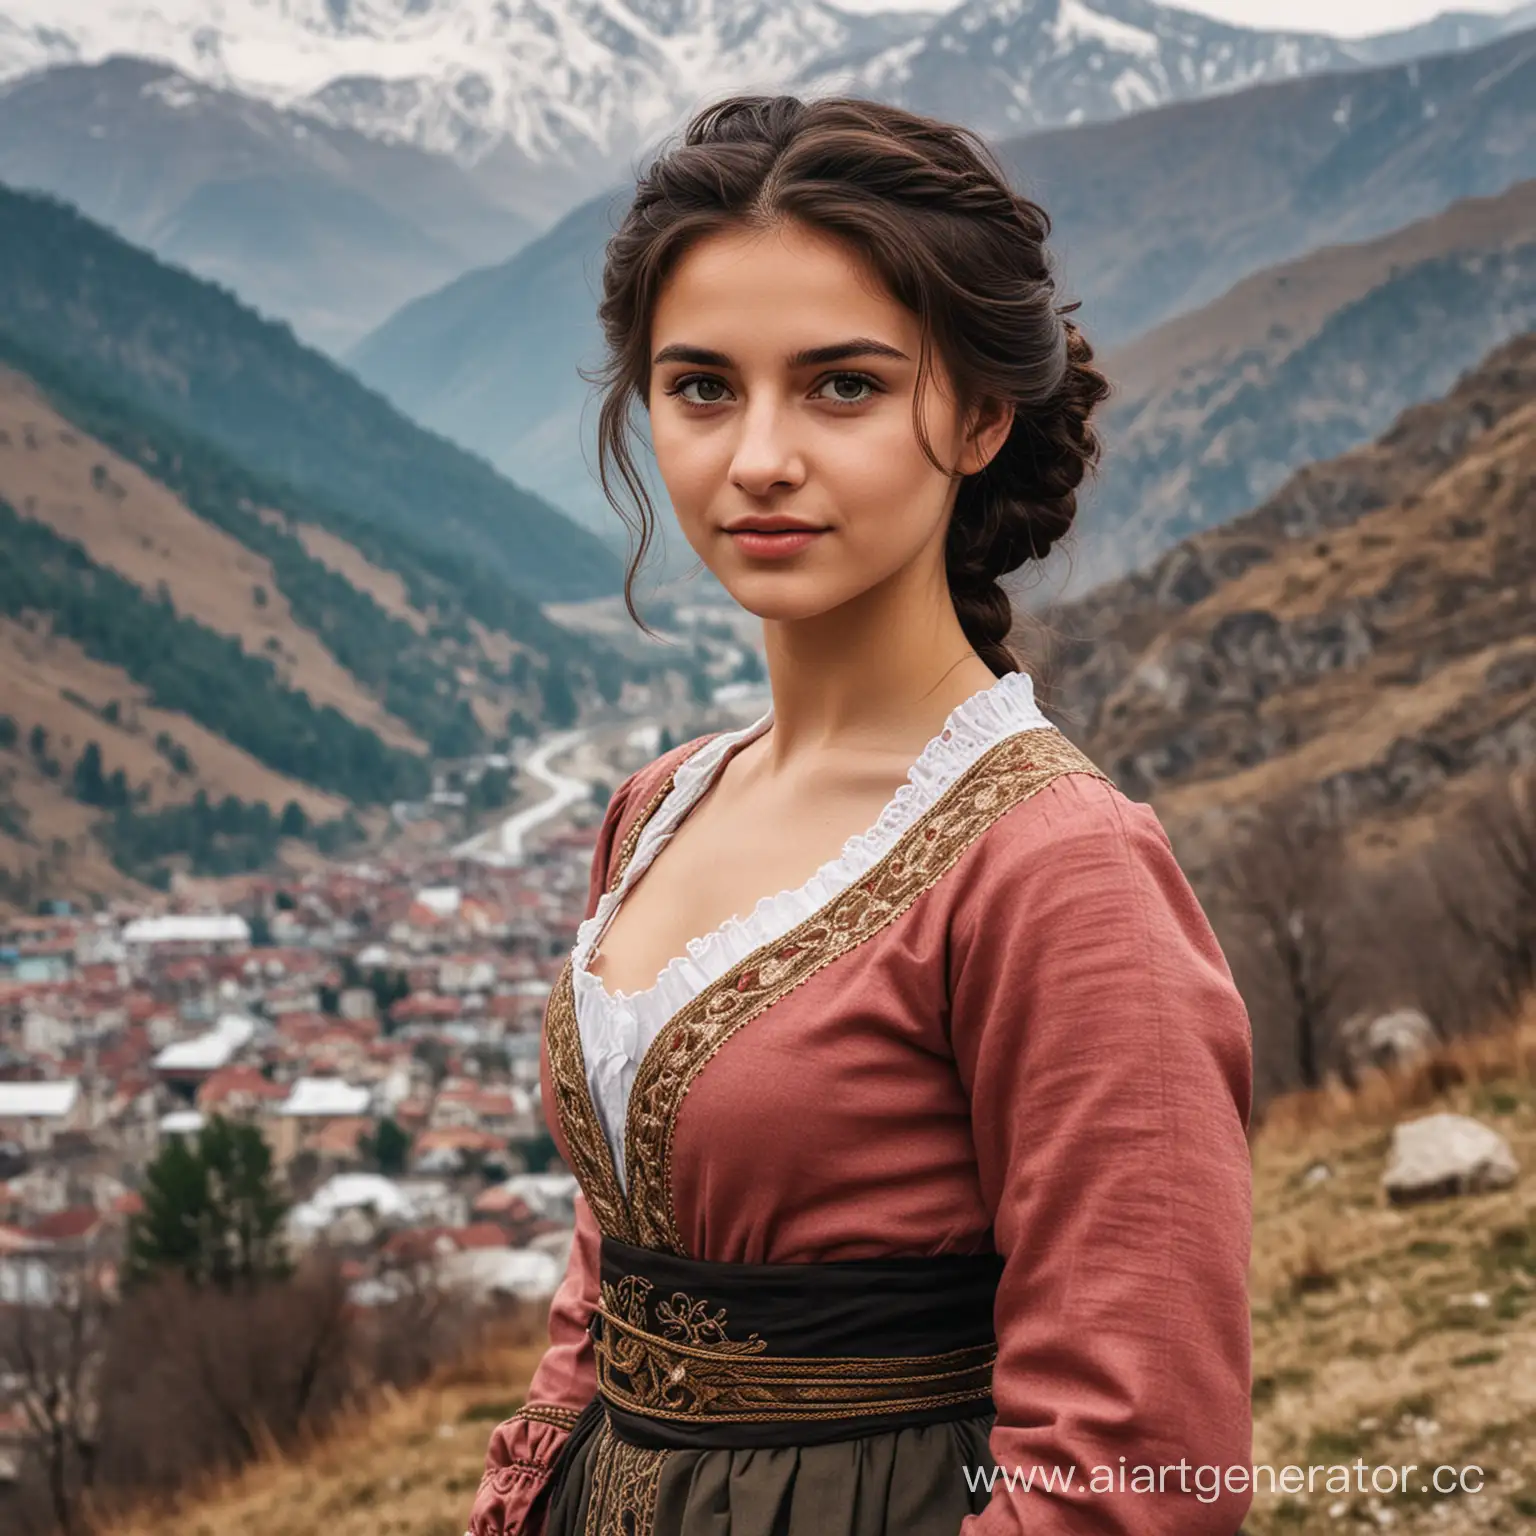 грузинская девушка на фоне гор
